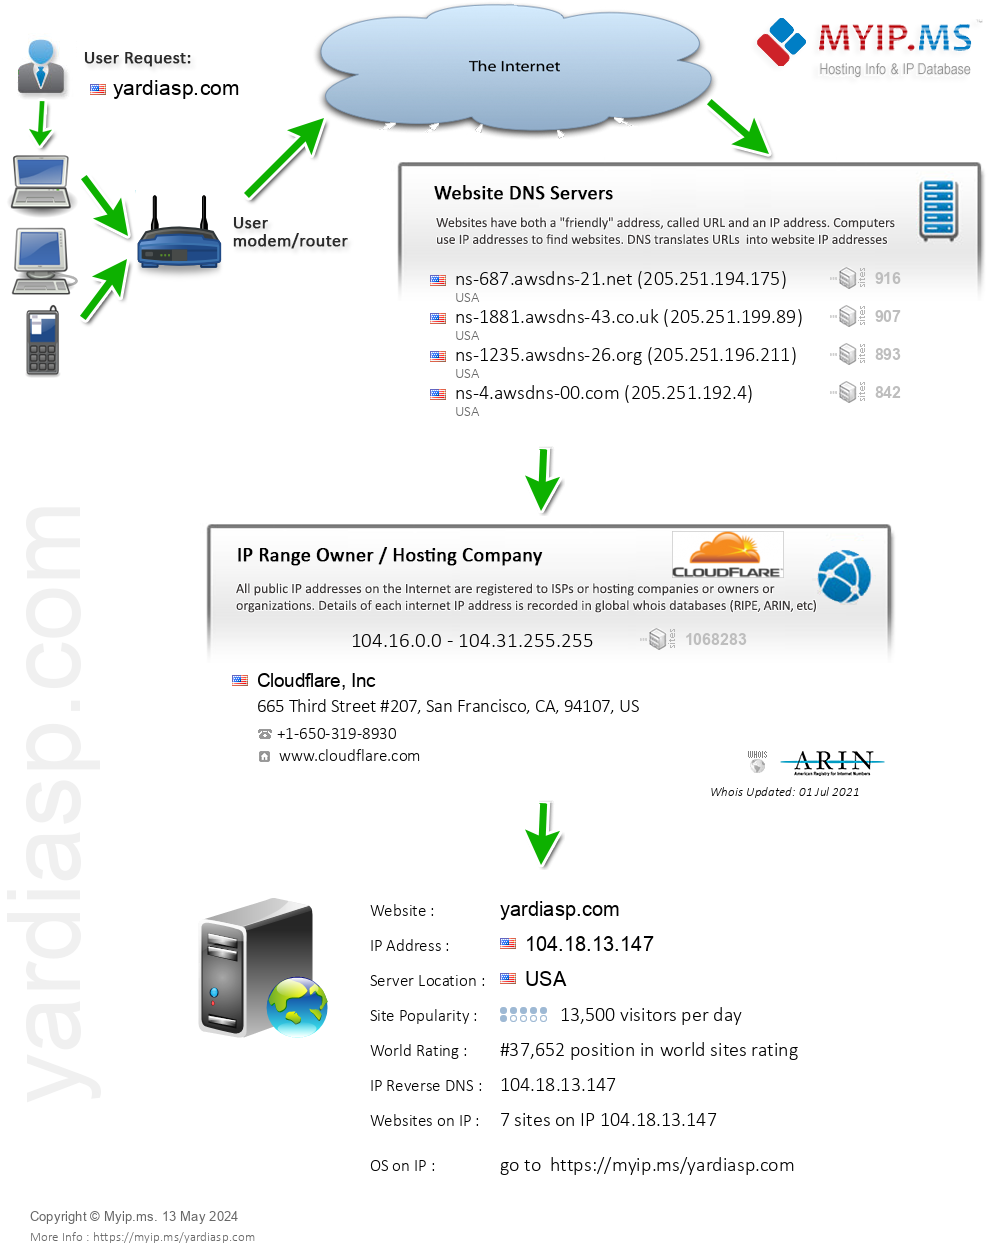 Yardiasp.com - Website Hosting Visual IP Diagram